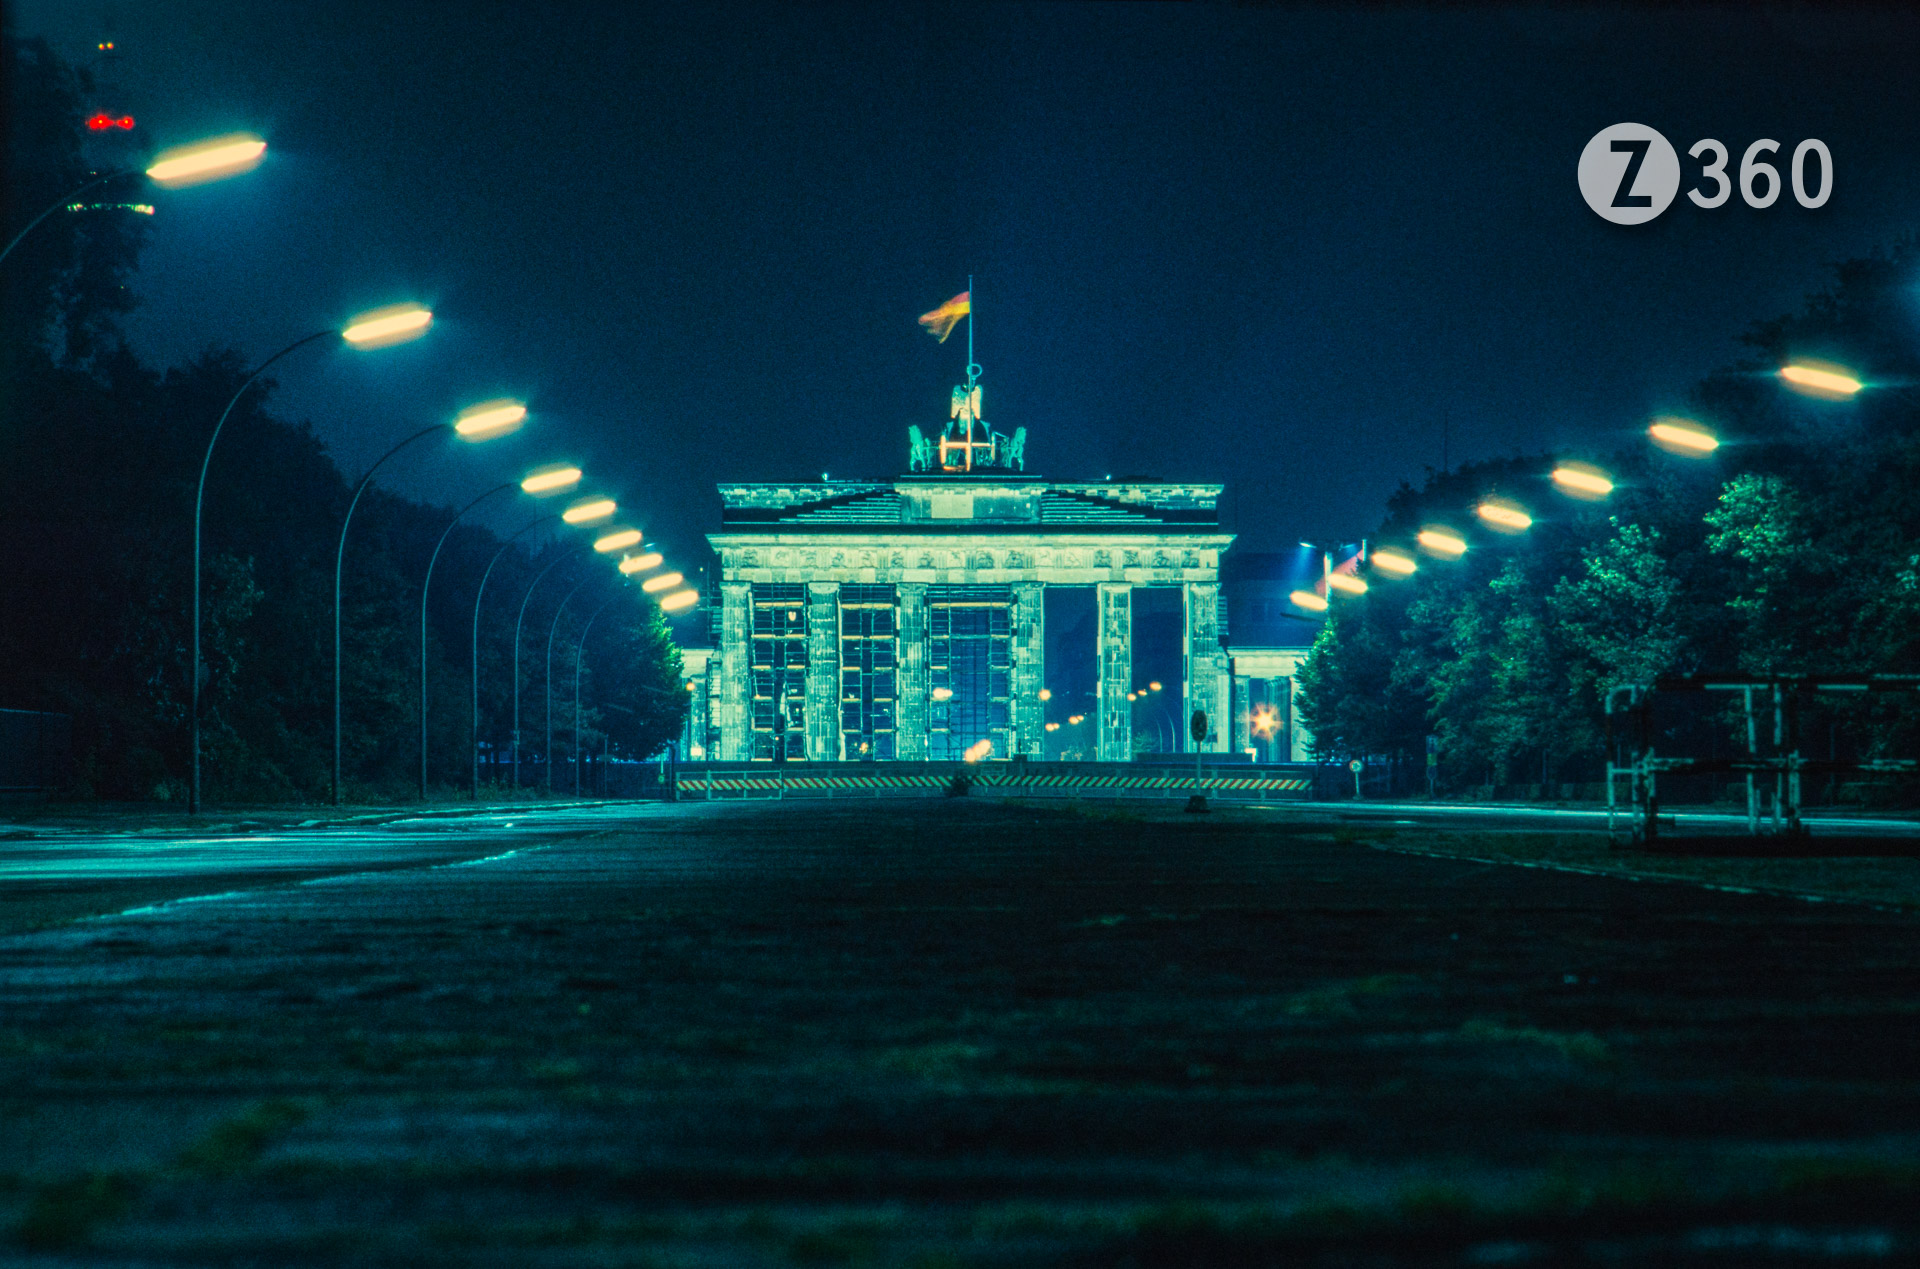 Brandenburg Gate, West Berlin